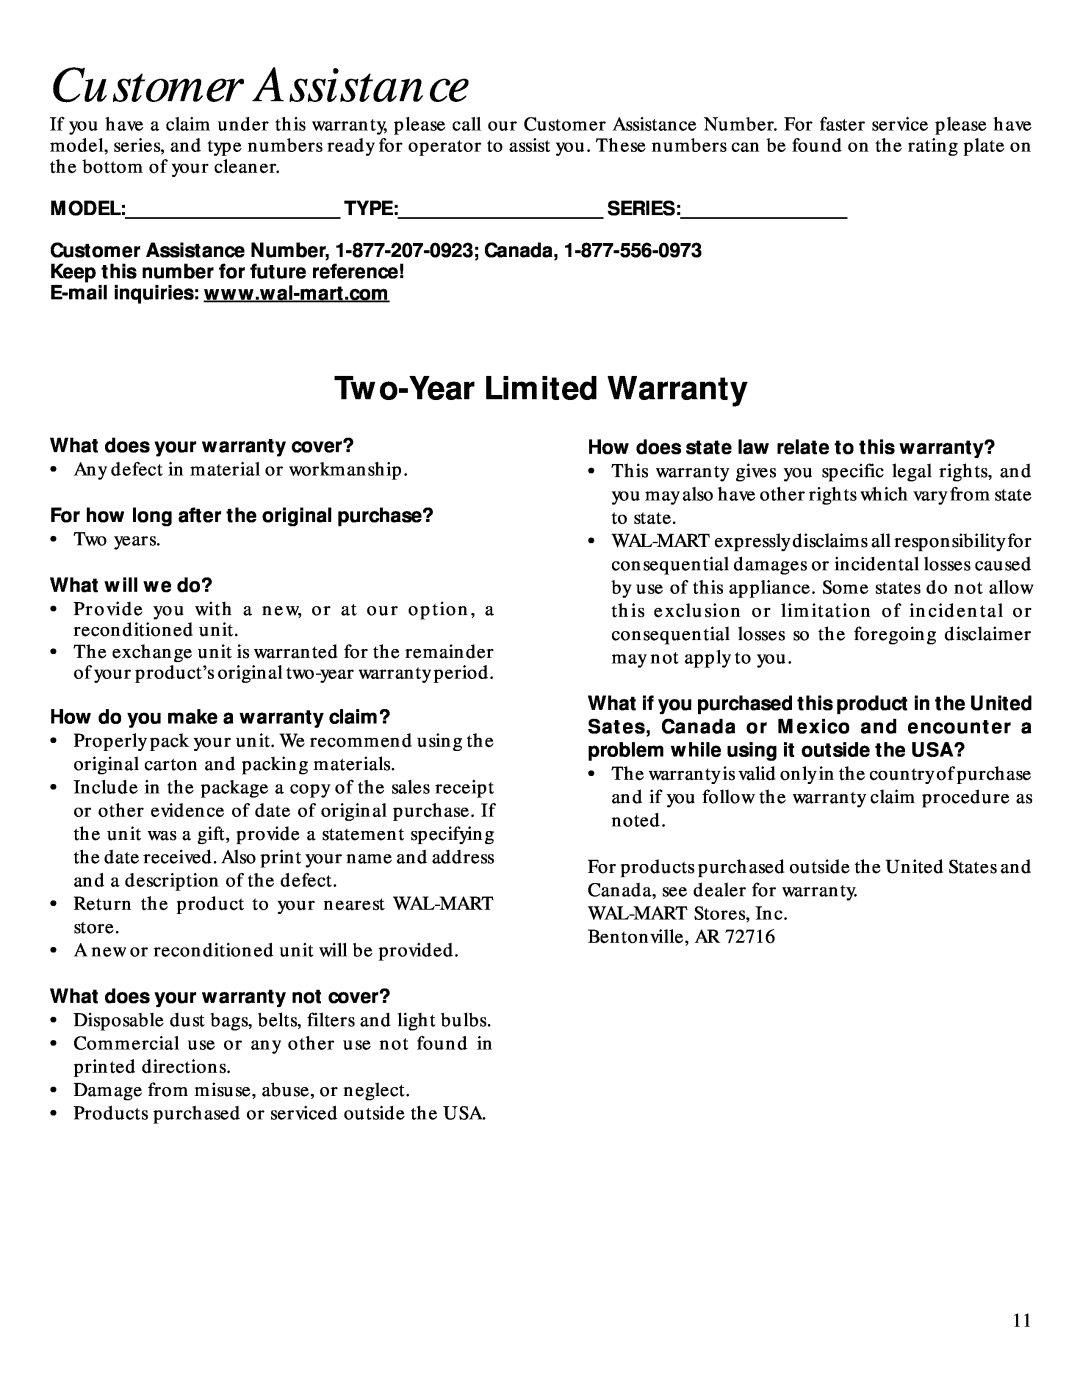 GE 106679, 71271 warranty Customer Assistance, Two-YearLimited Warranty 